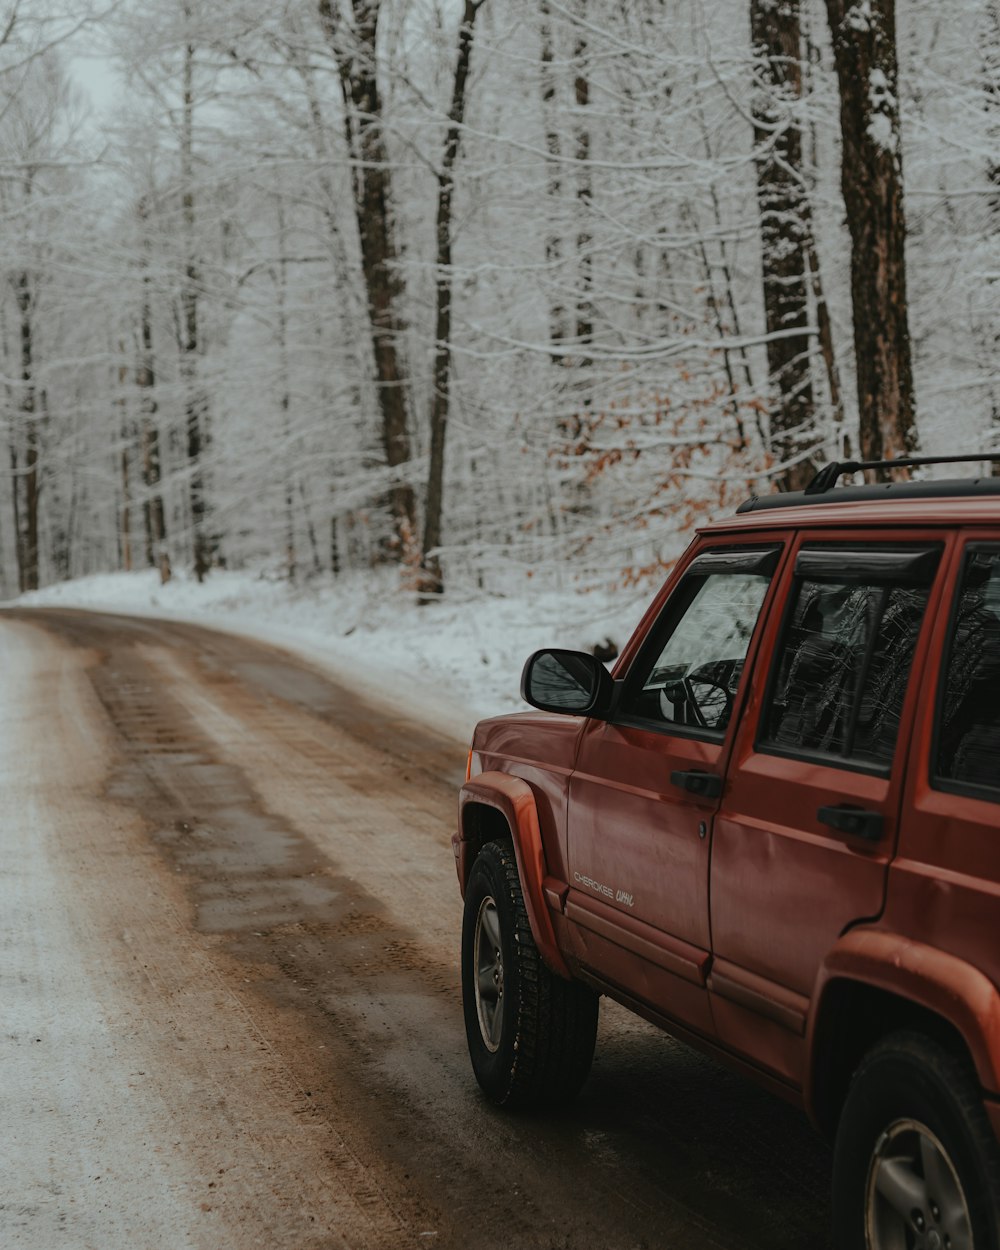 Um jipe vermelho dirigindo por uma estrada coberta de neve